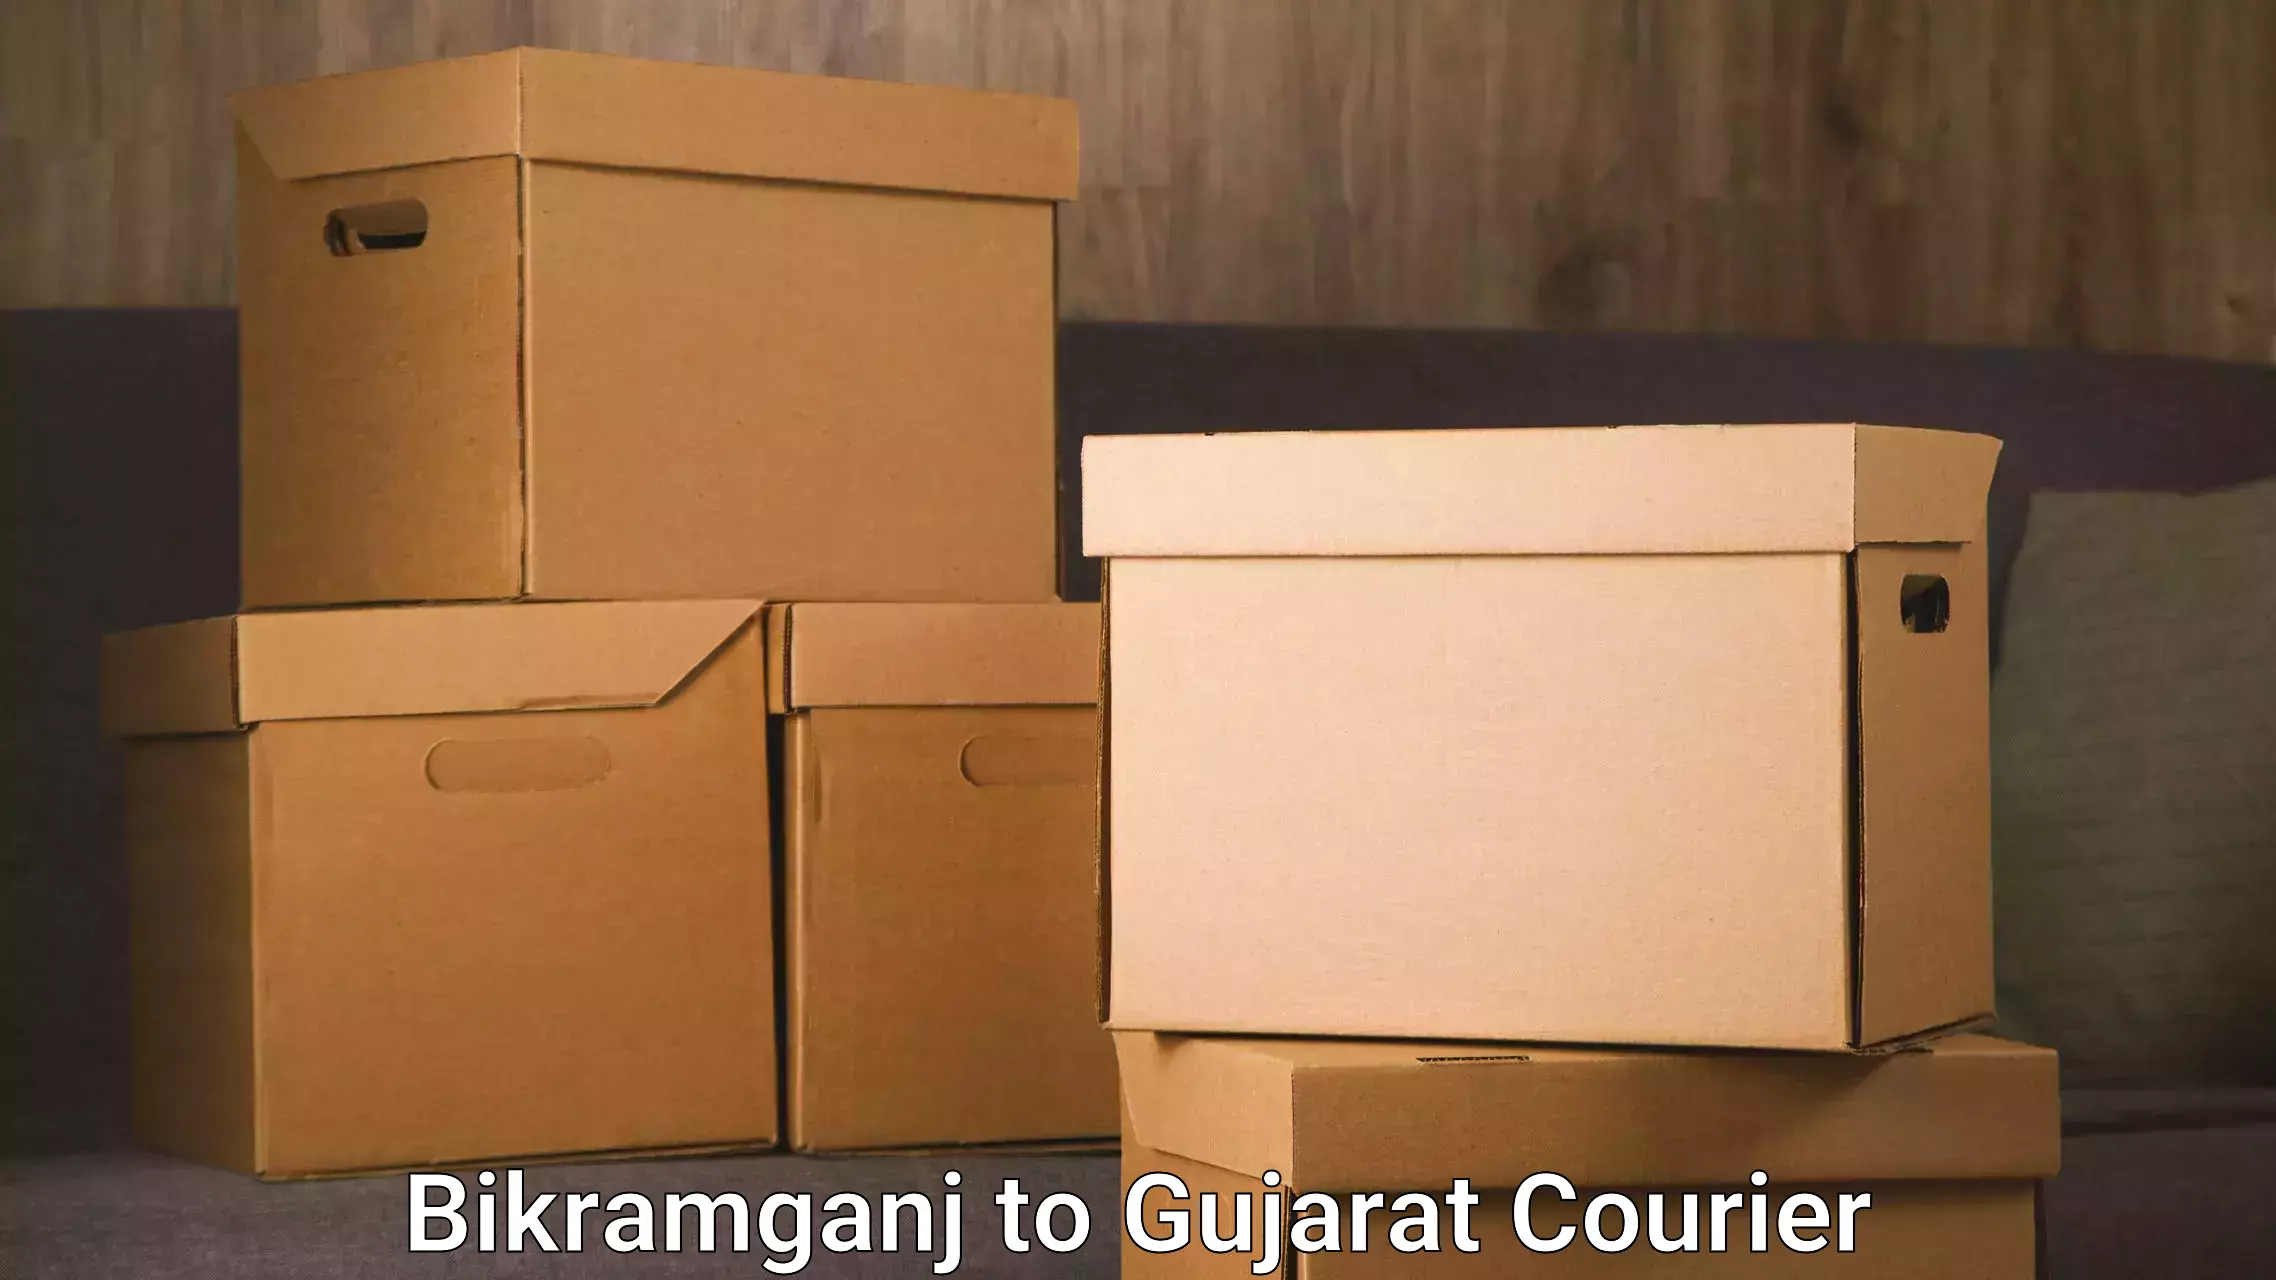 Furniture moving experts Bikramganj to Dwarka